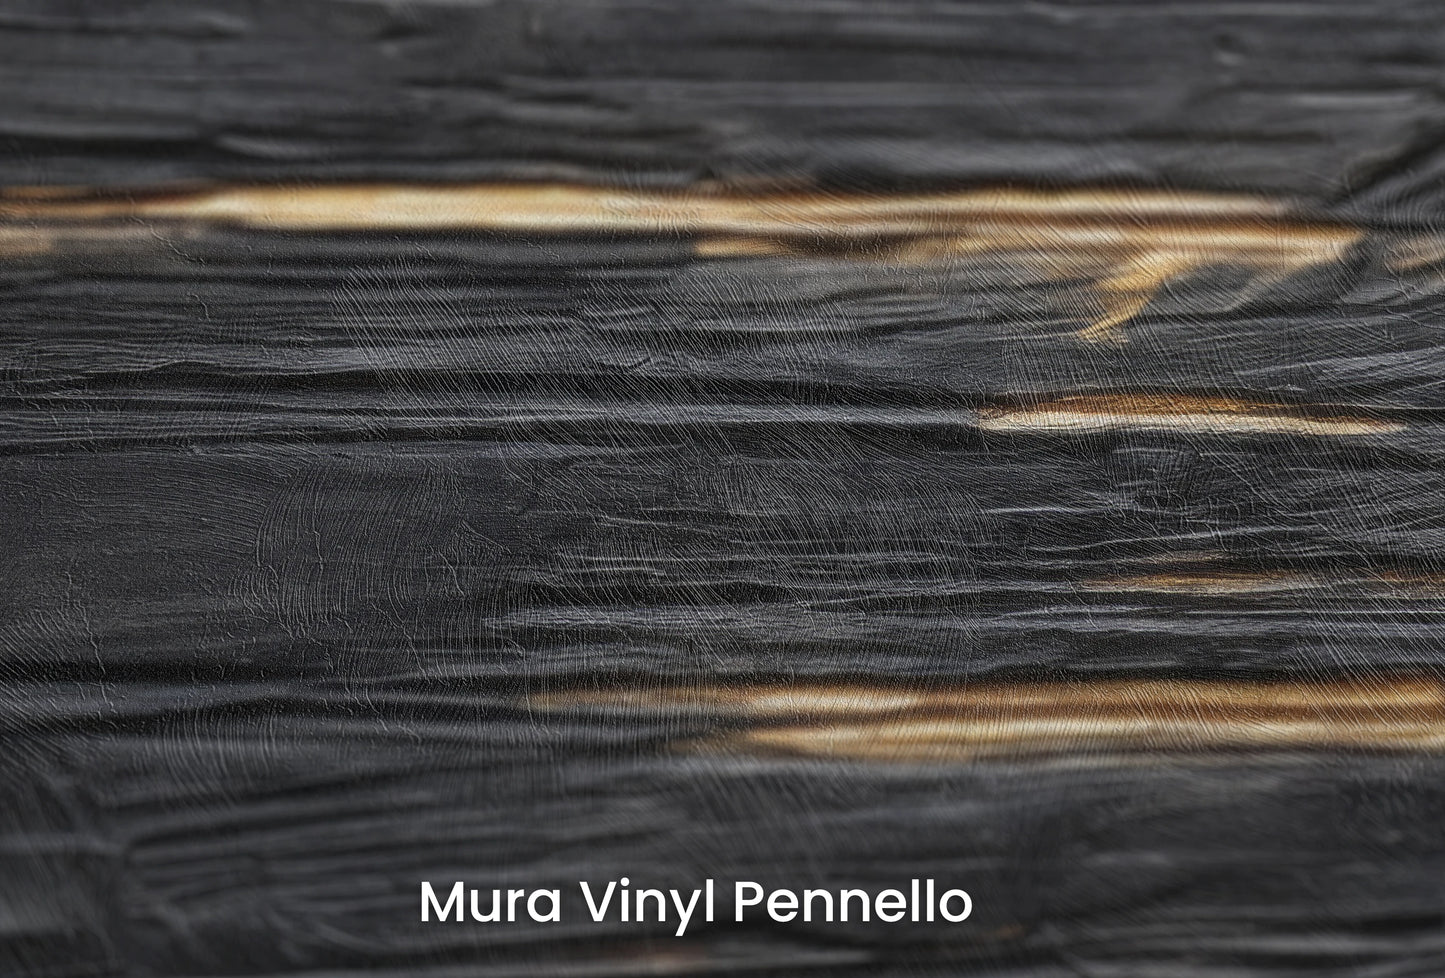 Zbliżenie na artystyczną fototapetę o nazwie Dark Currents na podłożu Mura Vinyl Pennello - faktura pociągnięć pędzla malarskiego.